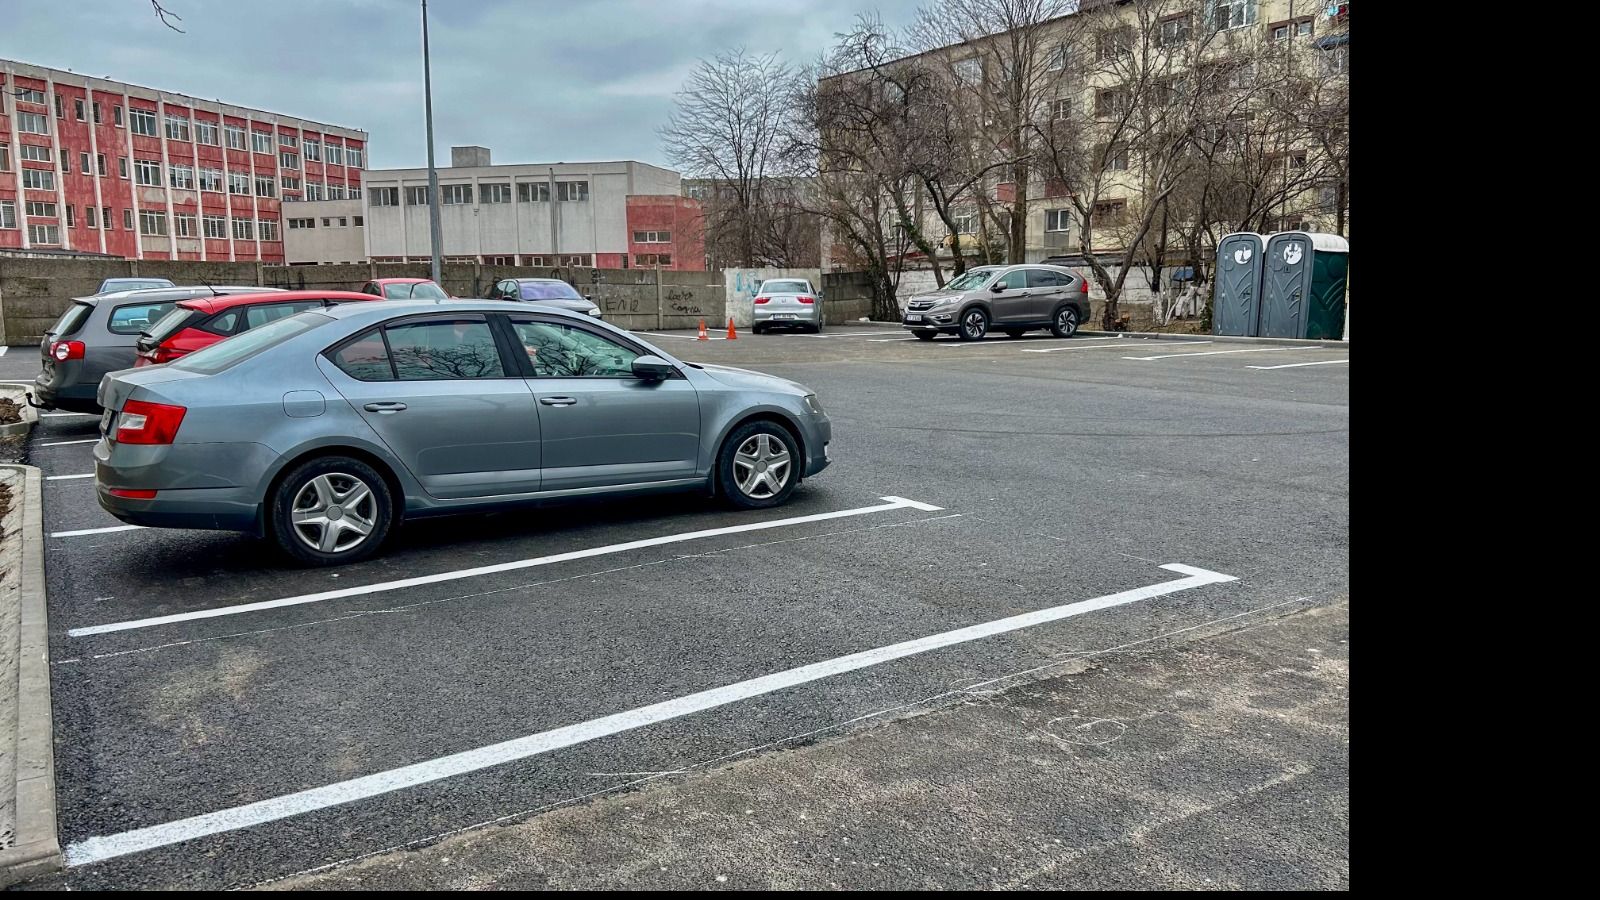 Noi locuri de parcare pentru locuitorii cartierului CET - x-locuri-de-parcare-1708518269.jpg